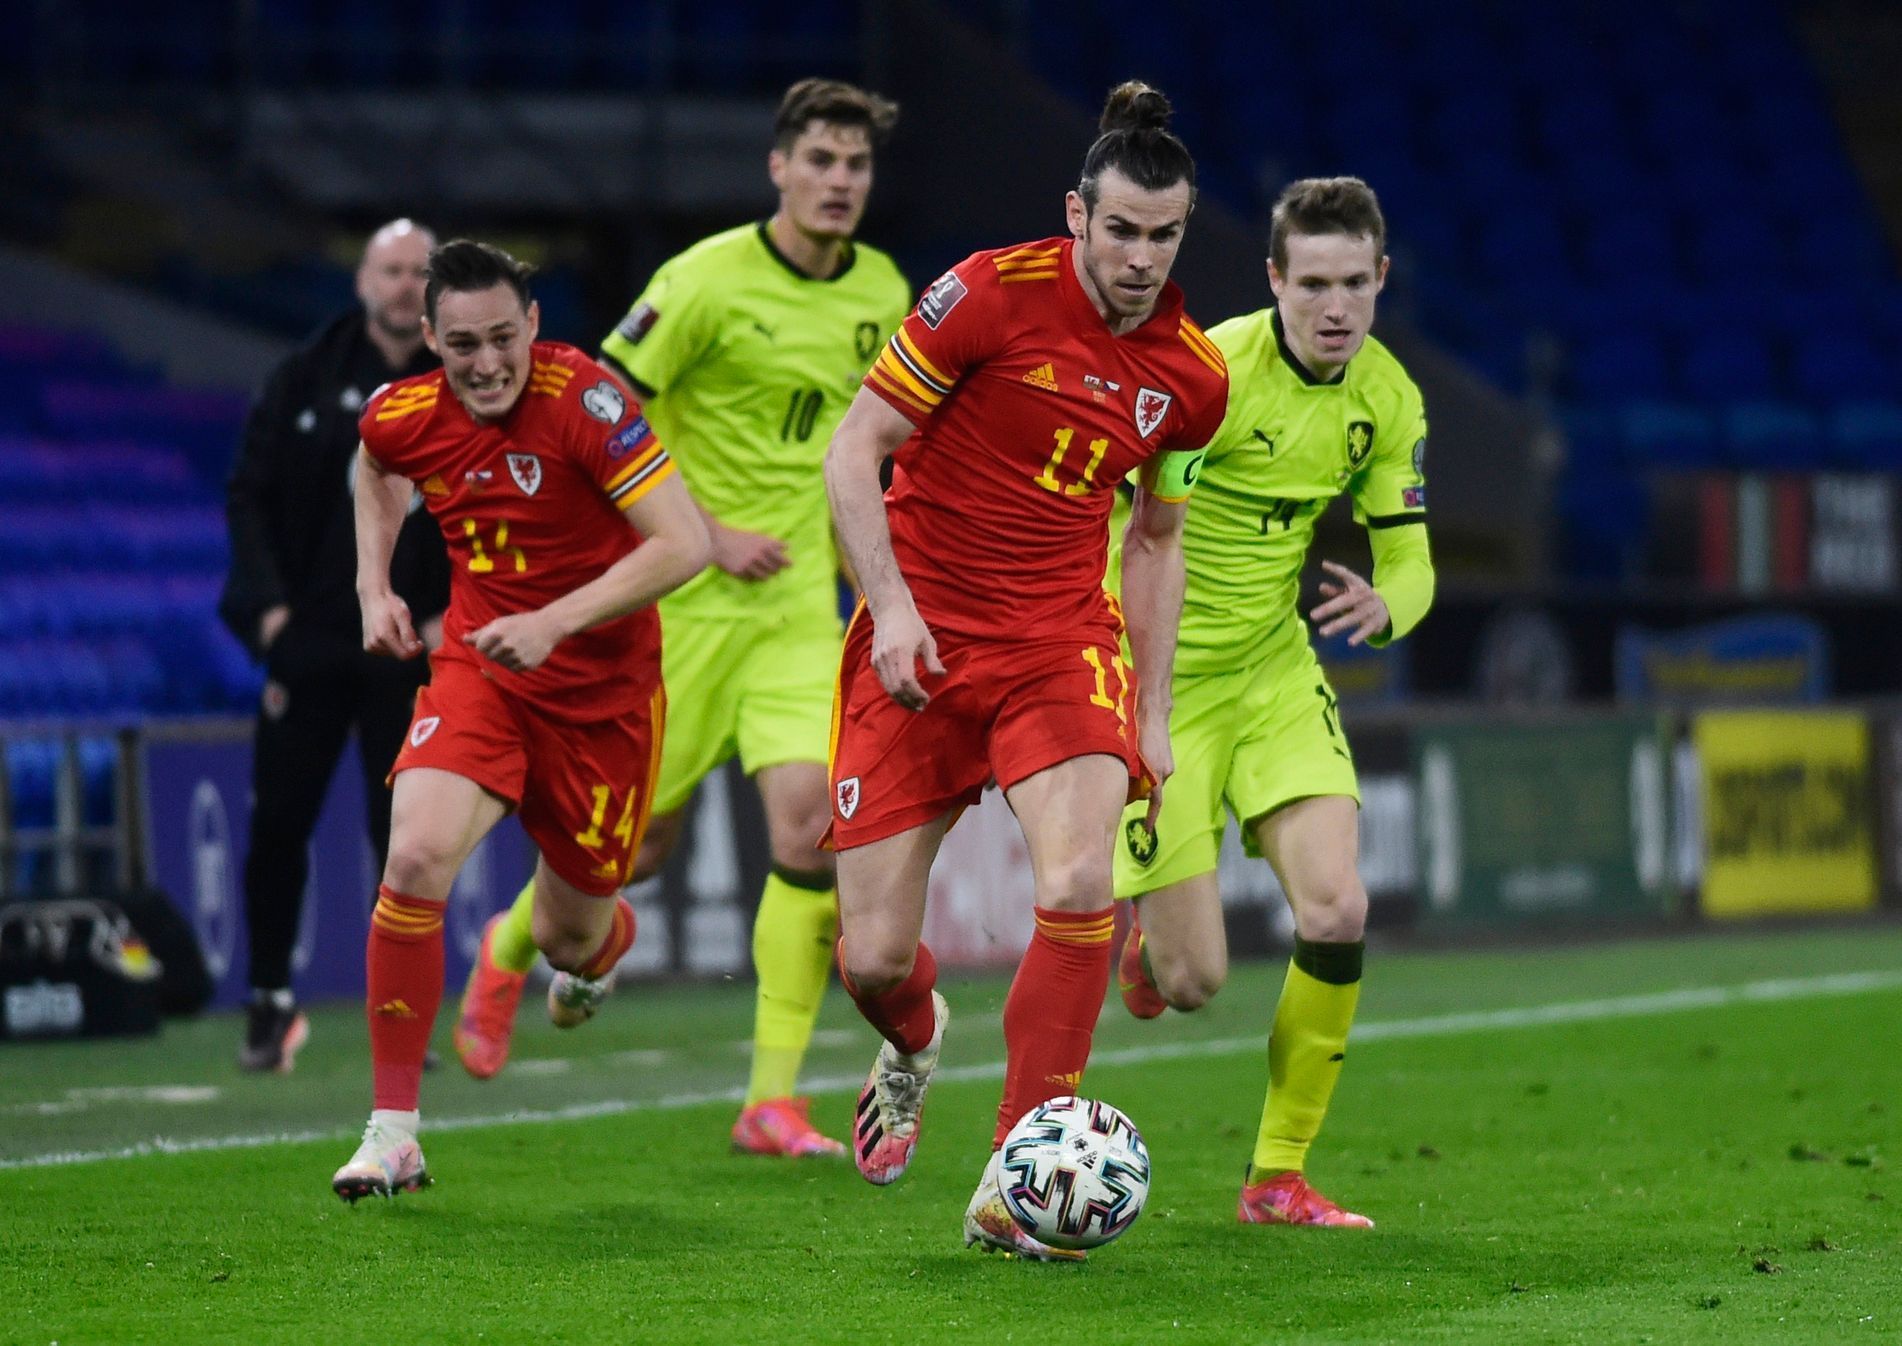 Gareth Bale v utkání kvalifikace MS 2022 Wales - Česko